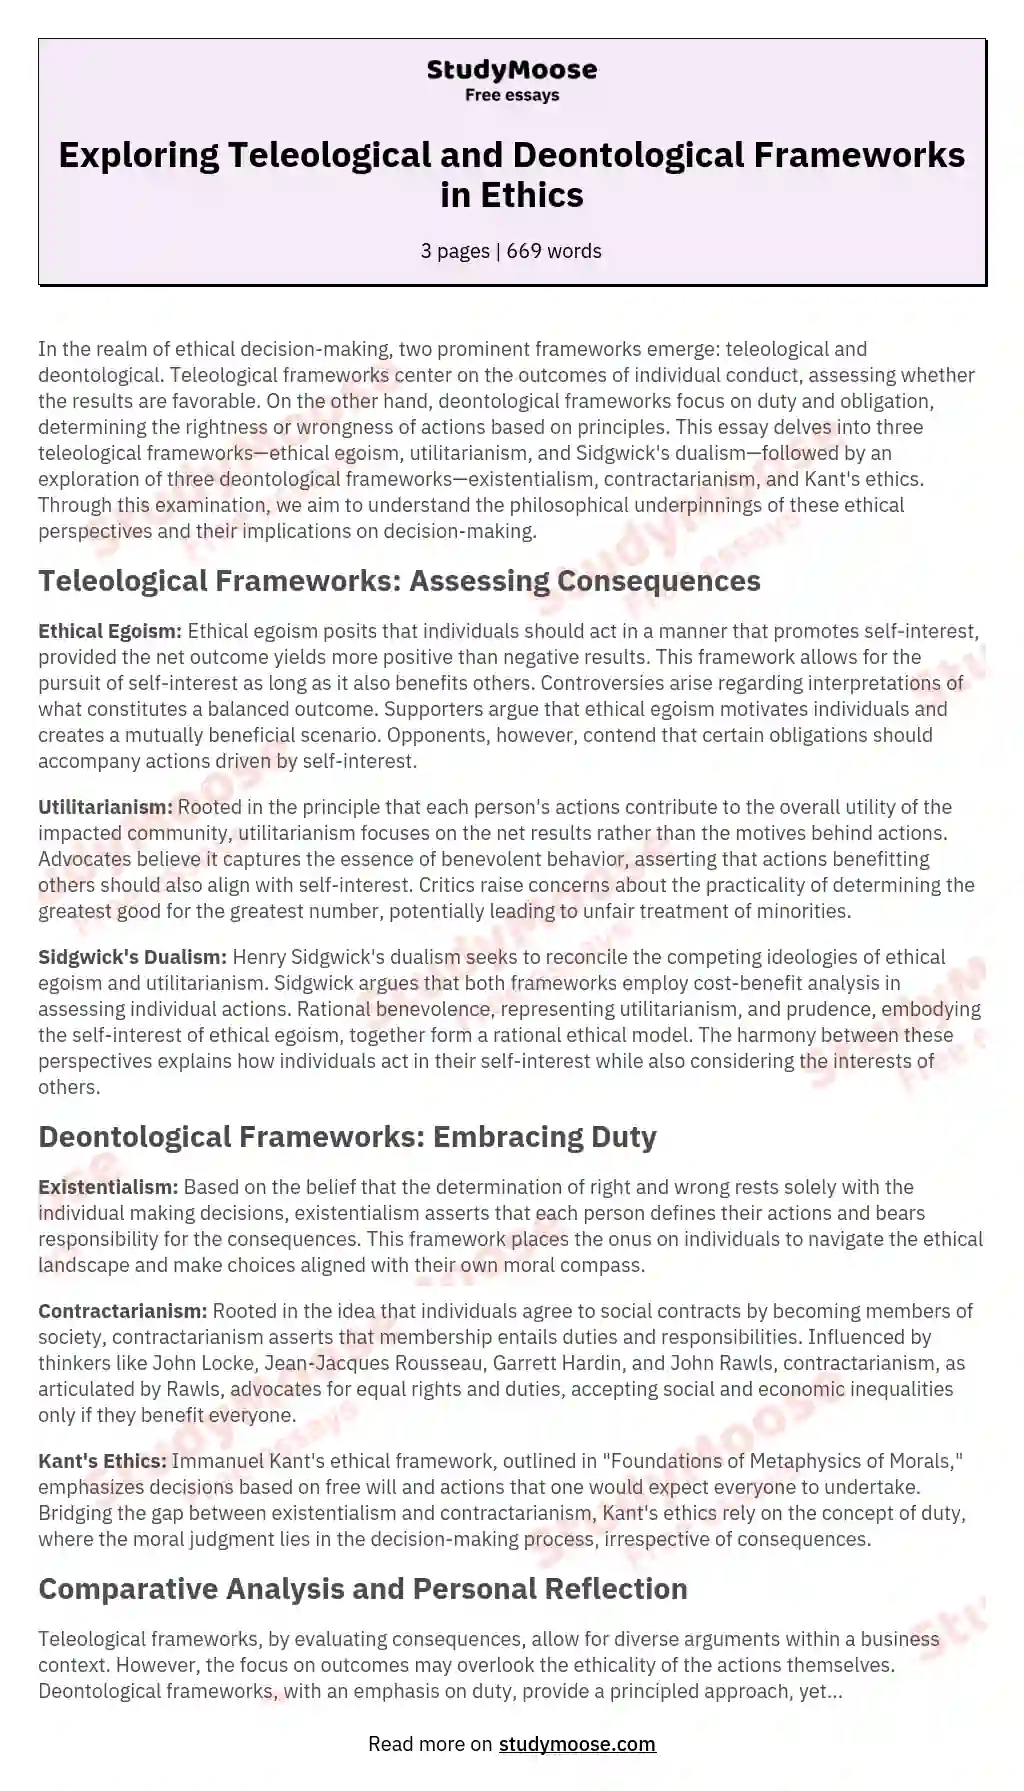 The Three Teleological Frameworks and Deontological Frameworks